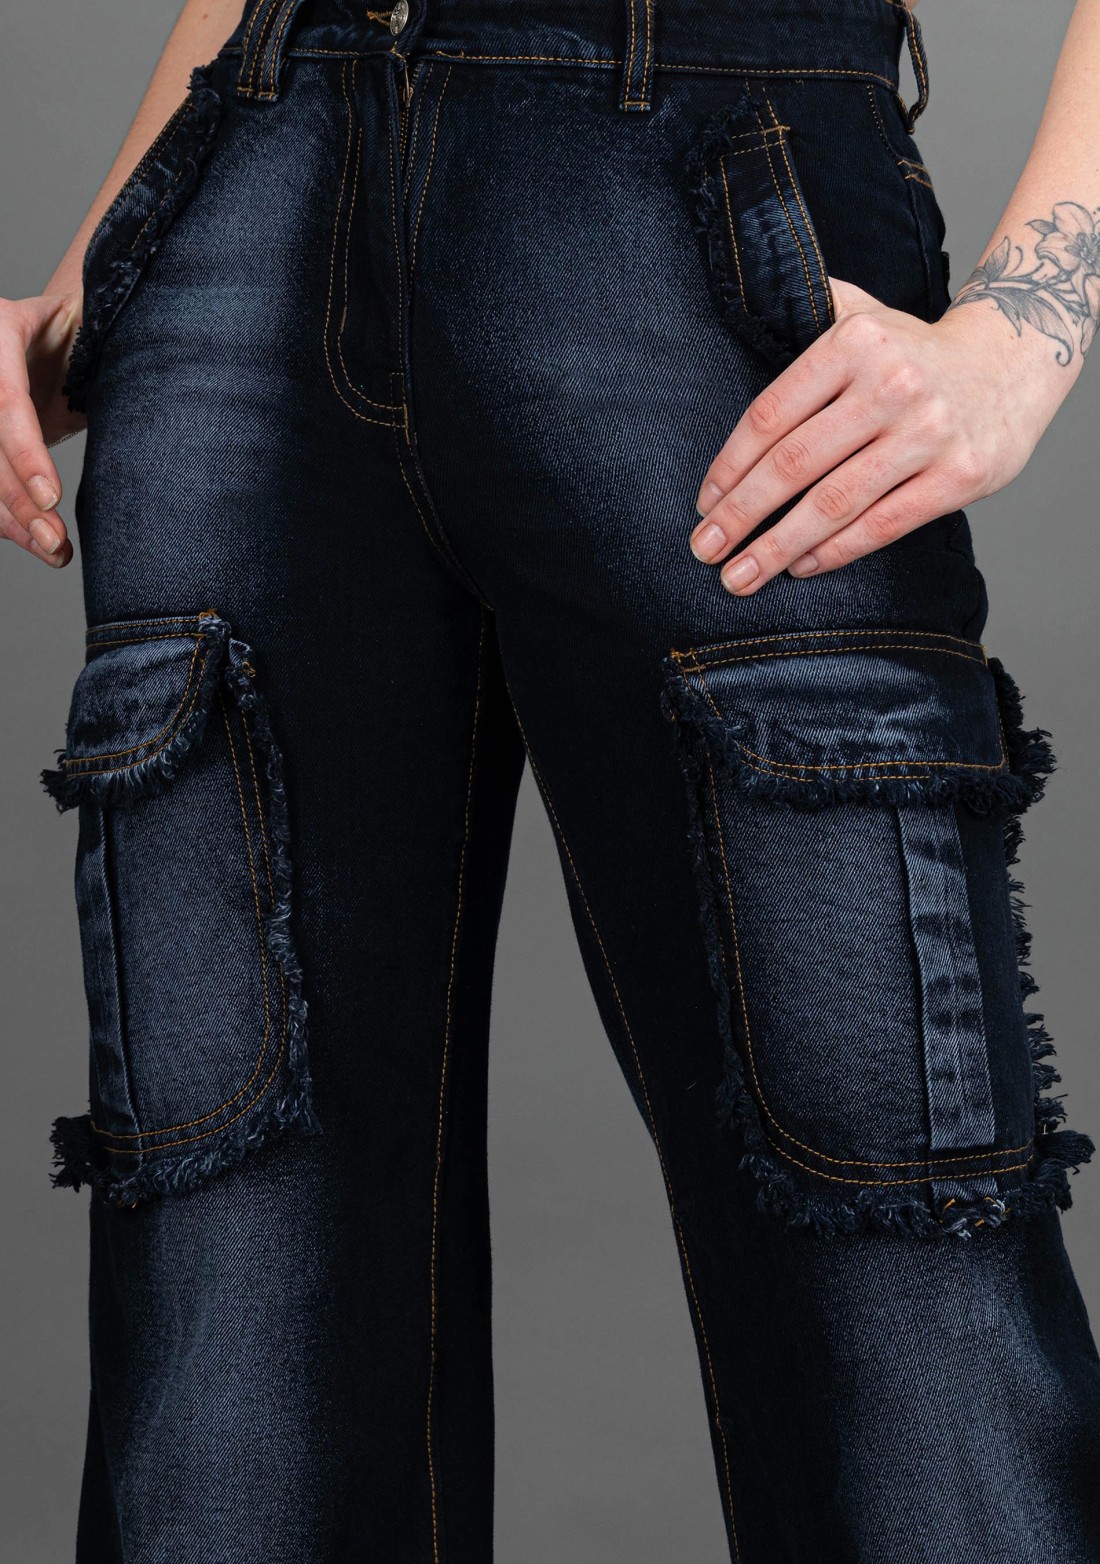 Bluish Grey Wide Leg Rhysley Women's Fashion Jeans